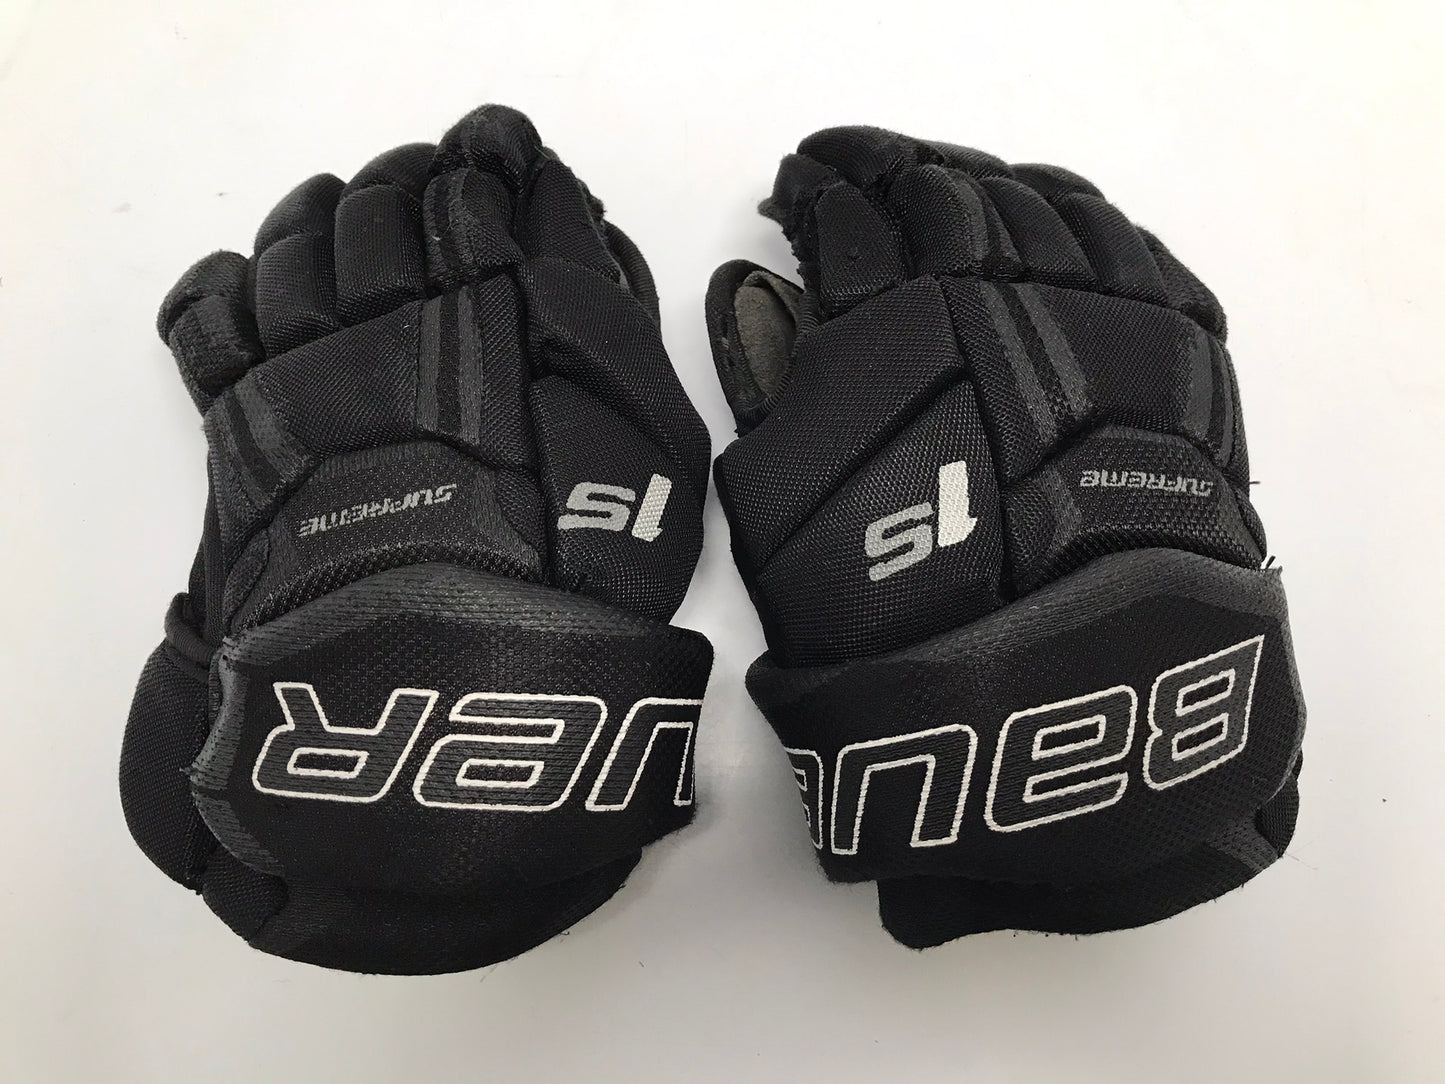 Hockey Gloves Child Size 9 inch Bauer Supreme  Black Yellow